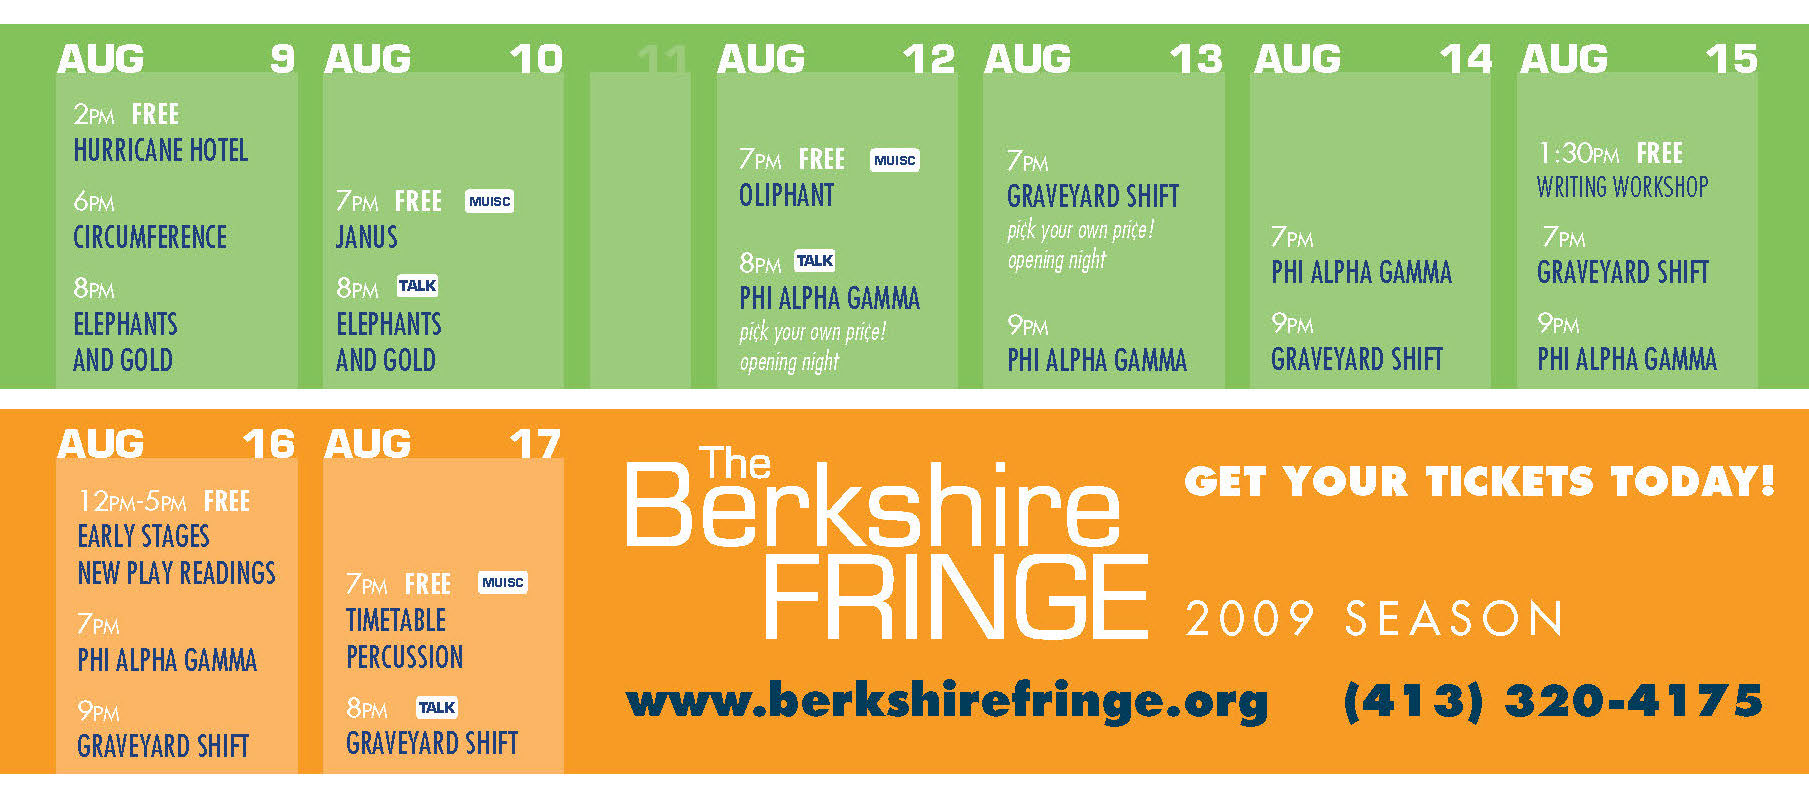 Berkshire Fringe Brochure 2009